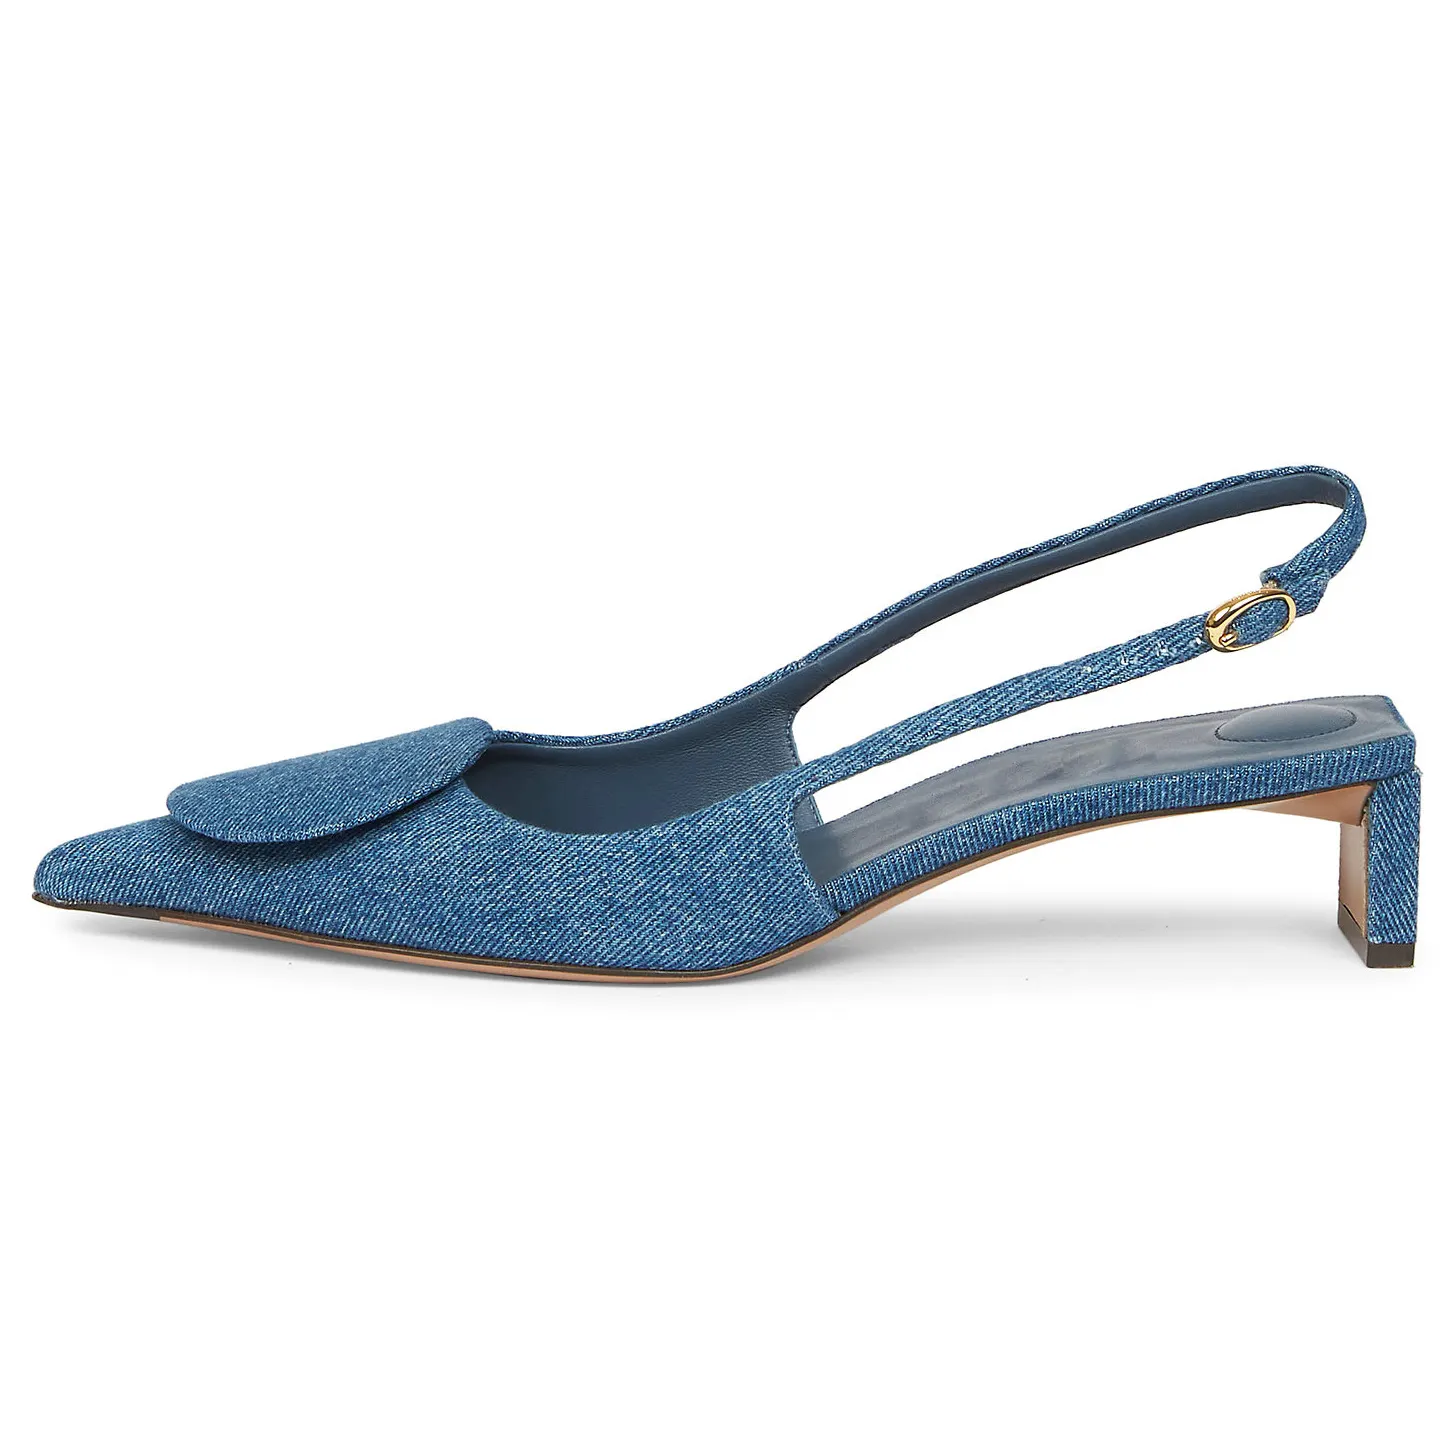 OEM/ODM alta calidad personalizado Slingback diseño Denim suela de goma superior puntiagudos tacones de oblea mujer sandalia zapatos